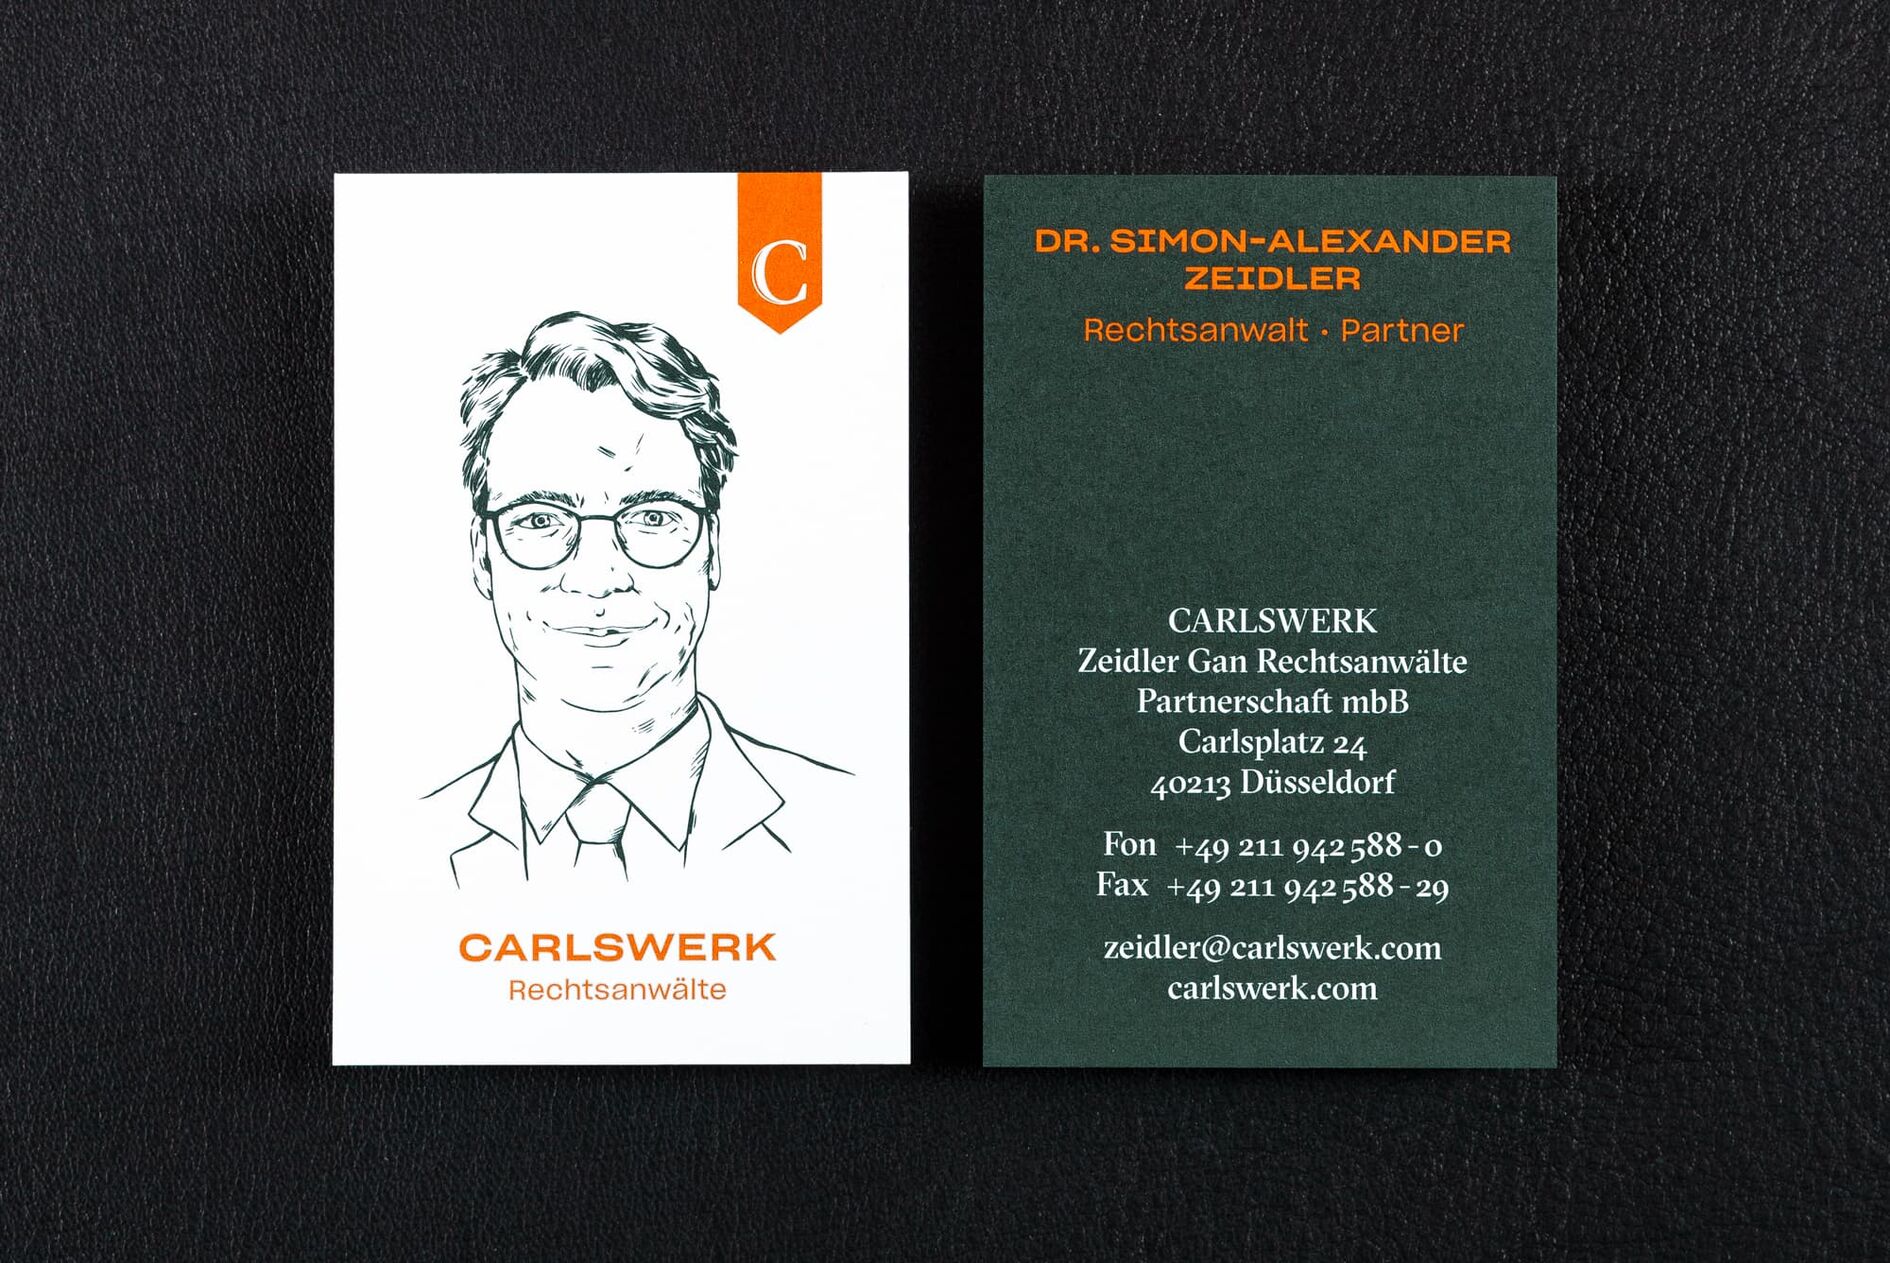 Carlskwerk Visitenkarte